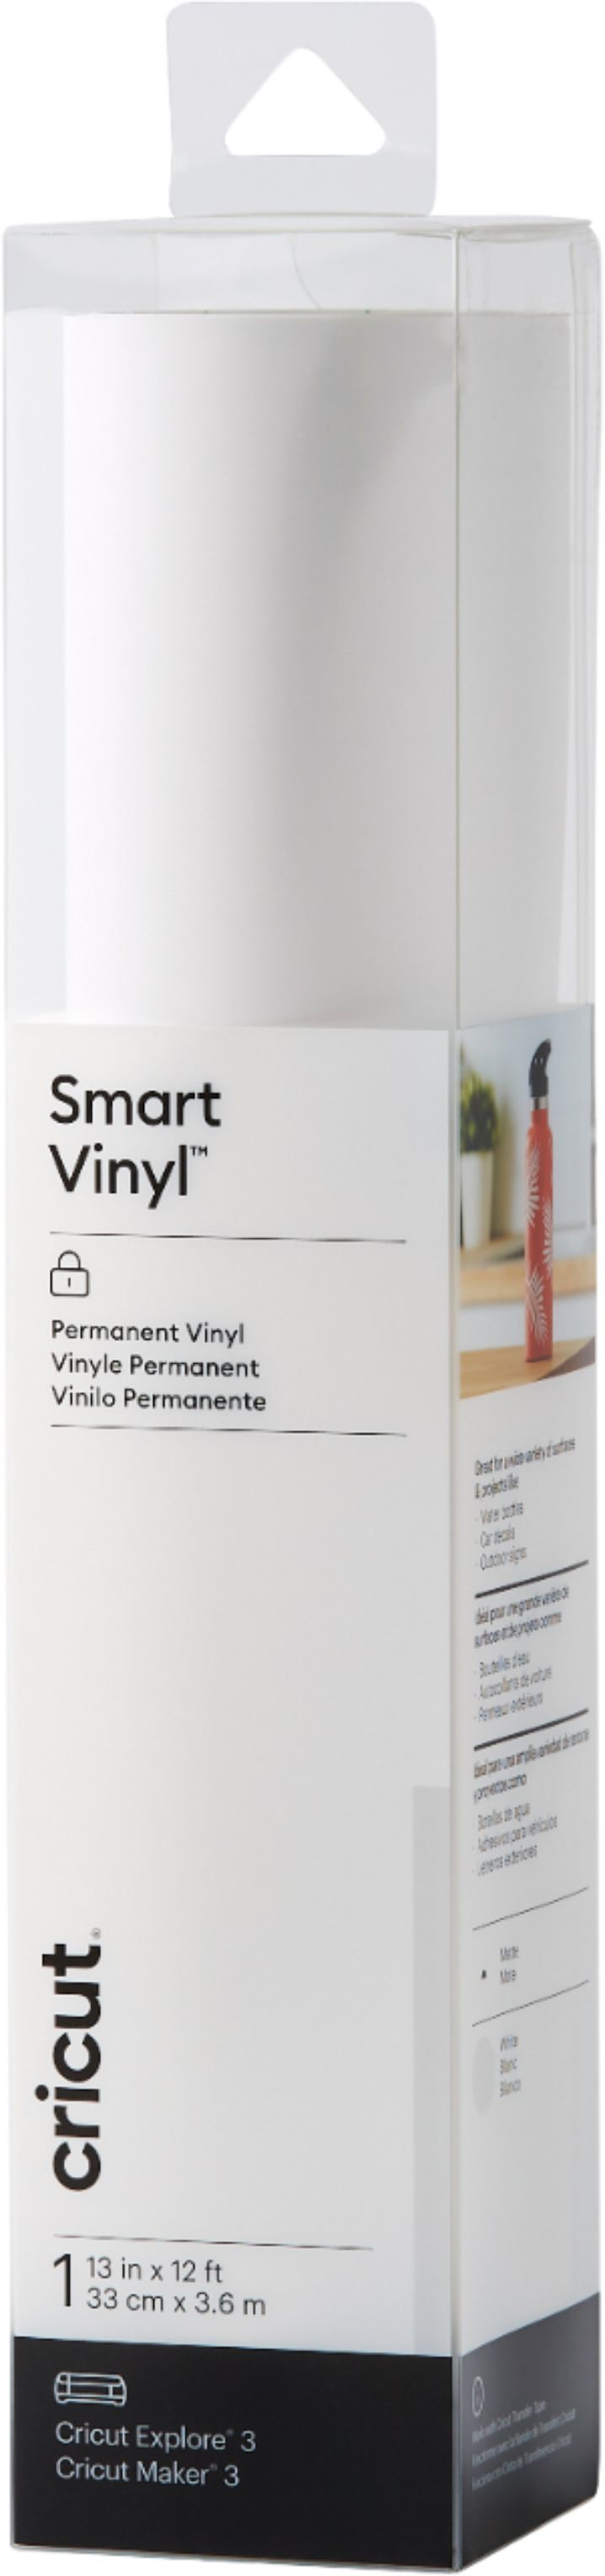 Cricut Smart Vinyl – Permanent 12 ft White 2008936 - Best Buy